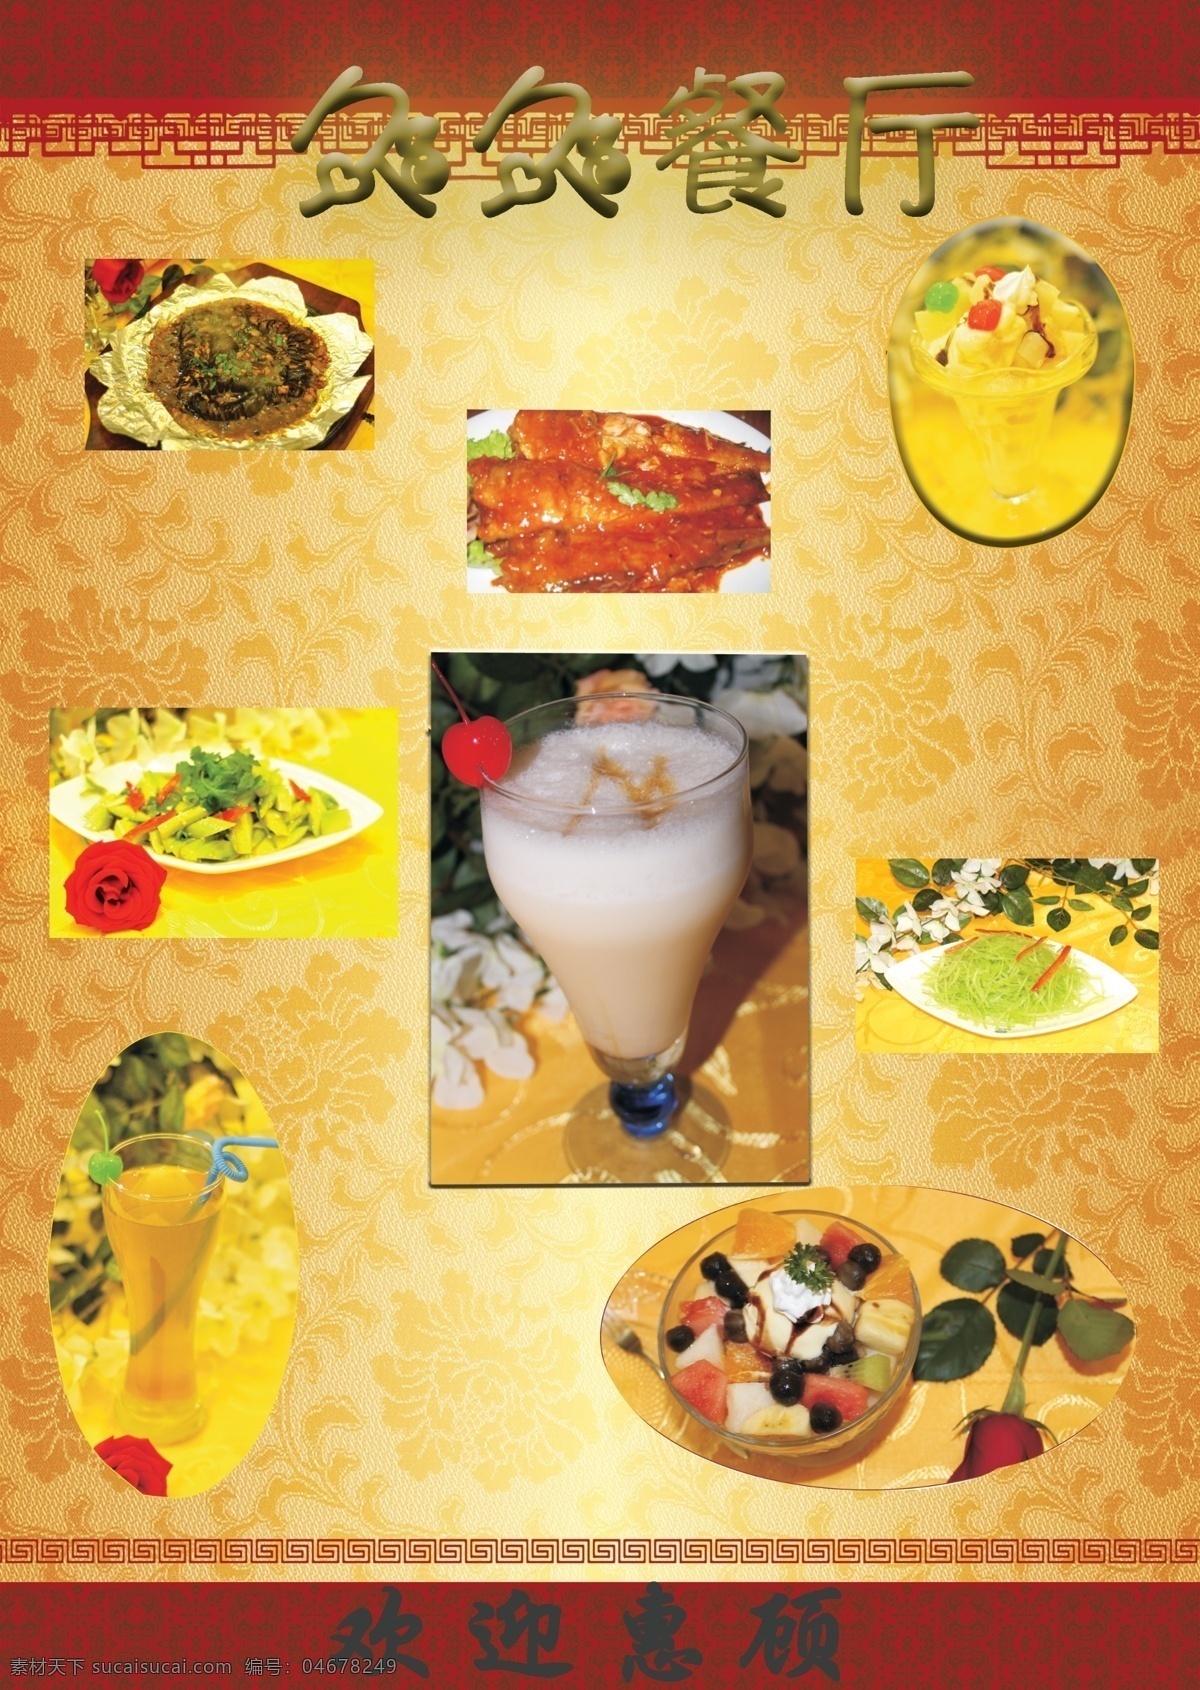 菜单免费下载 菜品 餐厅 风格 各种 古老 花纹 介绍 经典 玫瑰 民族 久久 饮料 中国 海报 促销海报